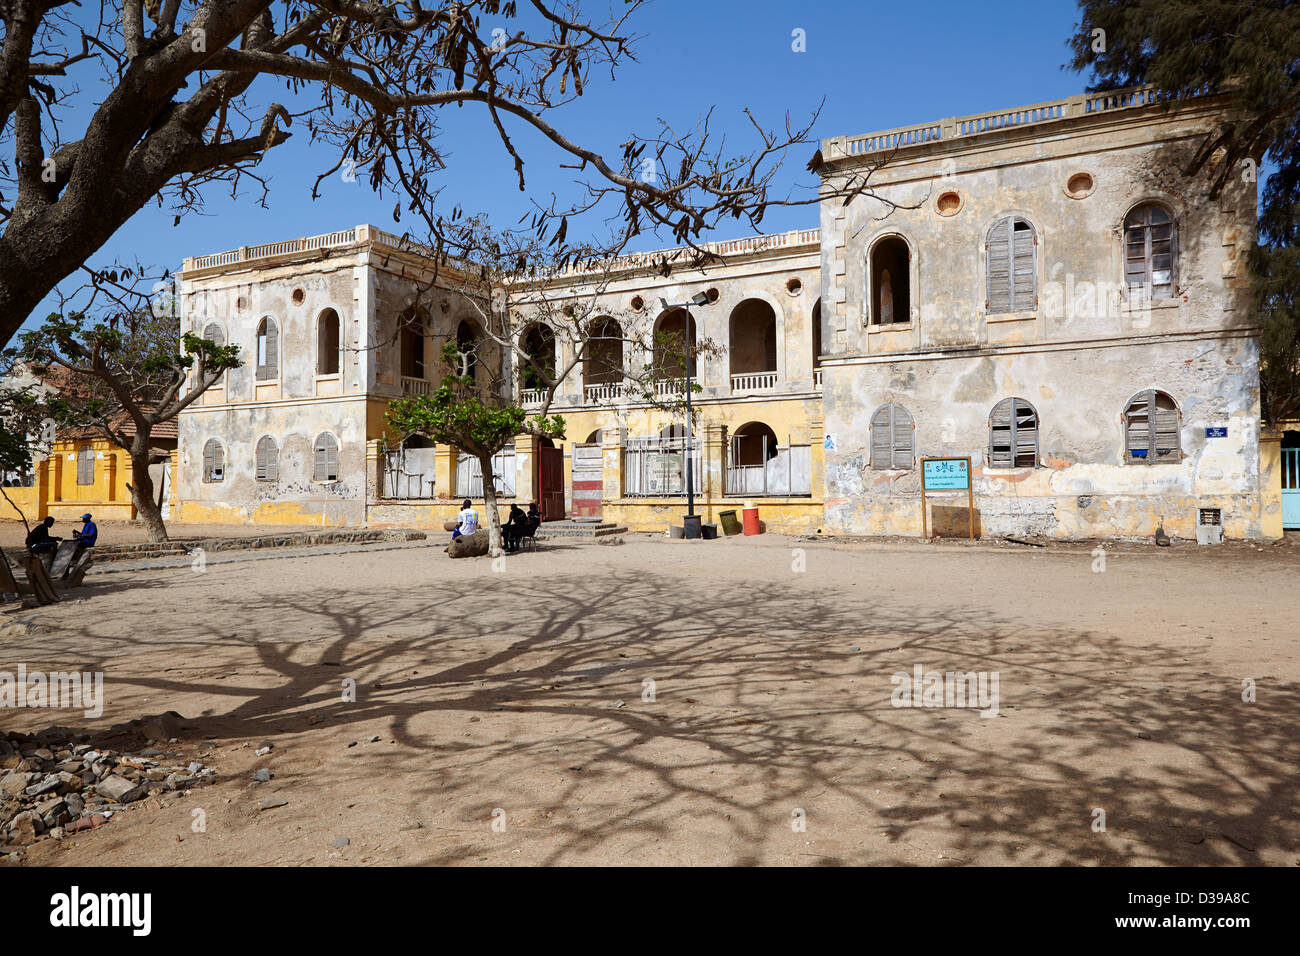 Ancienne Palais de Gouverneur (ancien palais du gouverneur), Ile de Gorée, Sénégal, Afrique Banque D'Images